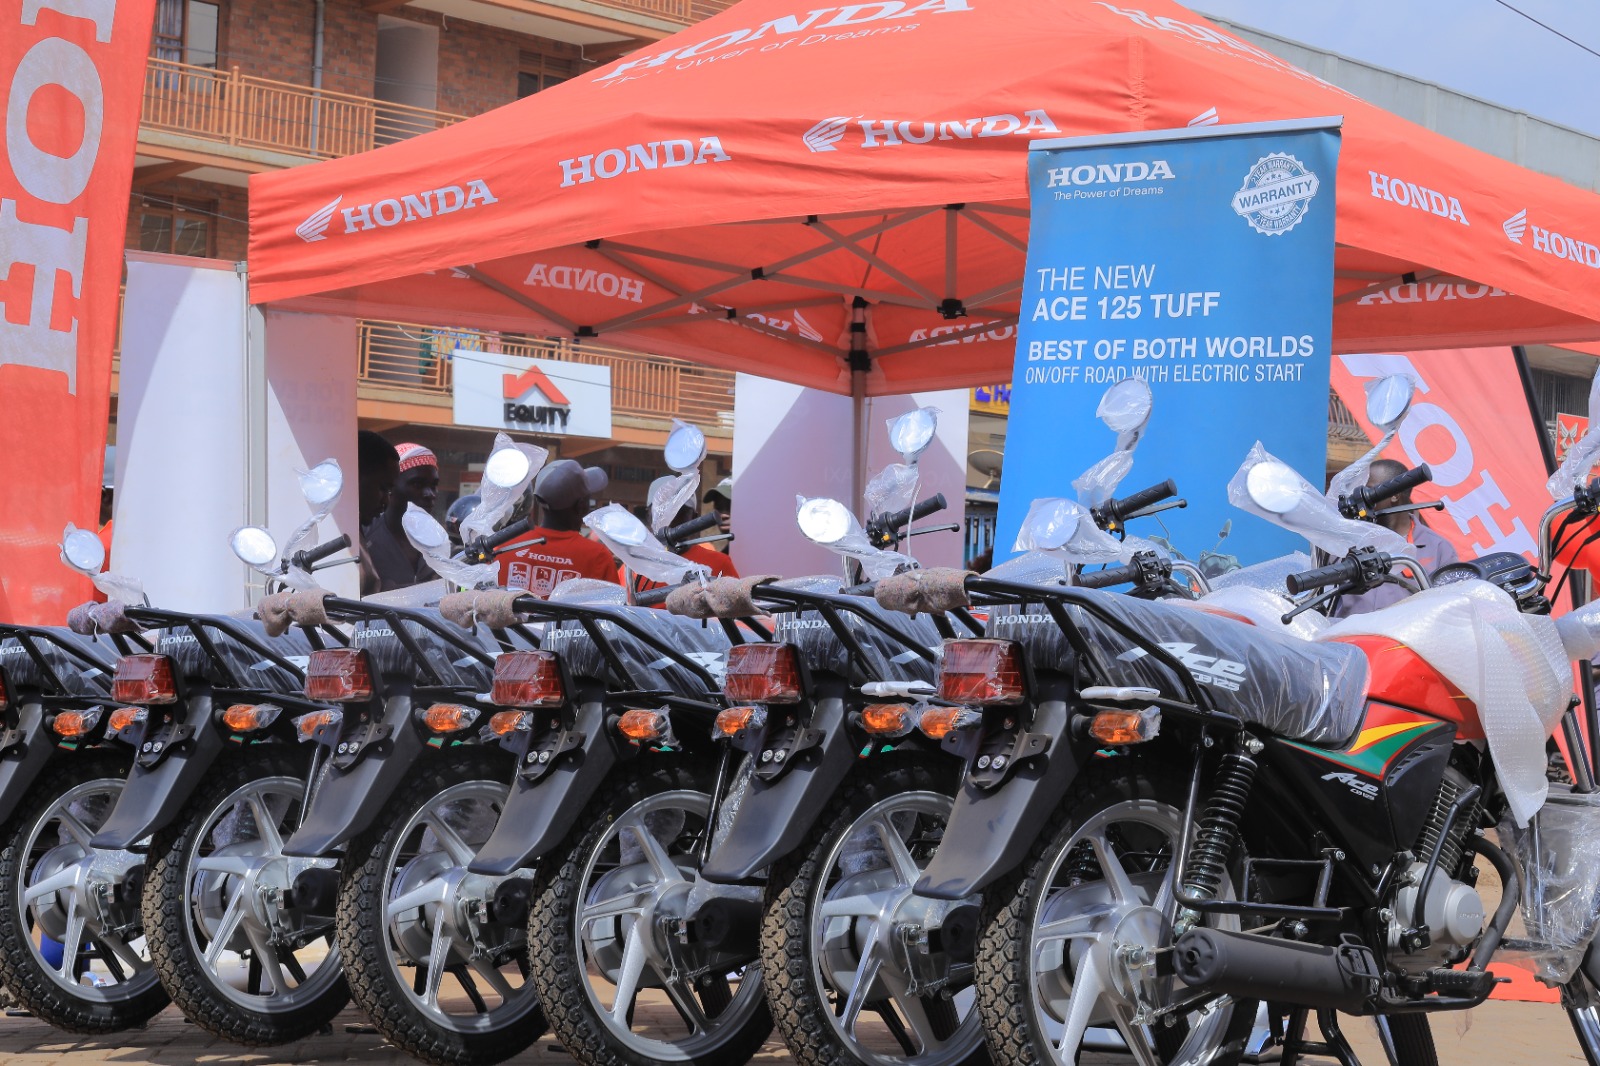 Honda rides its wings into boda market